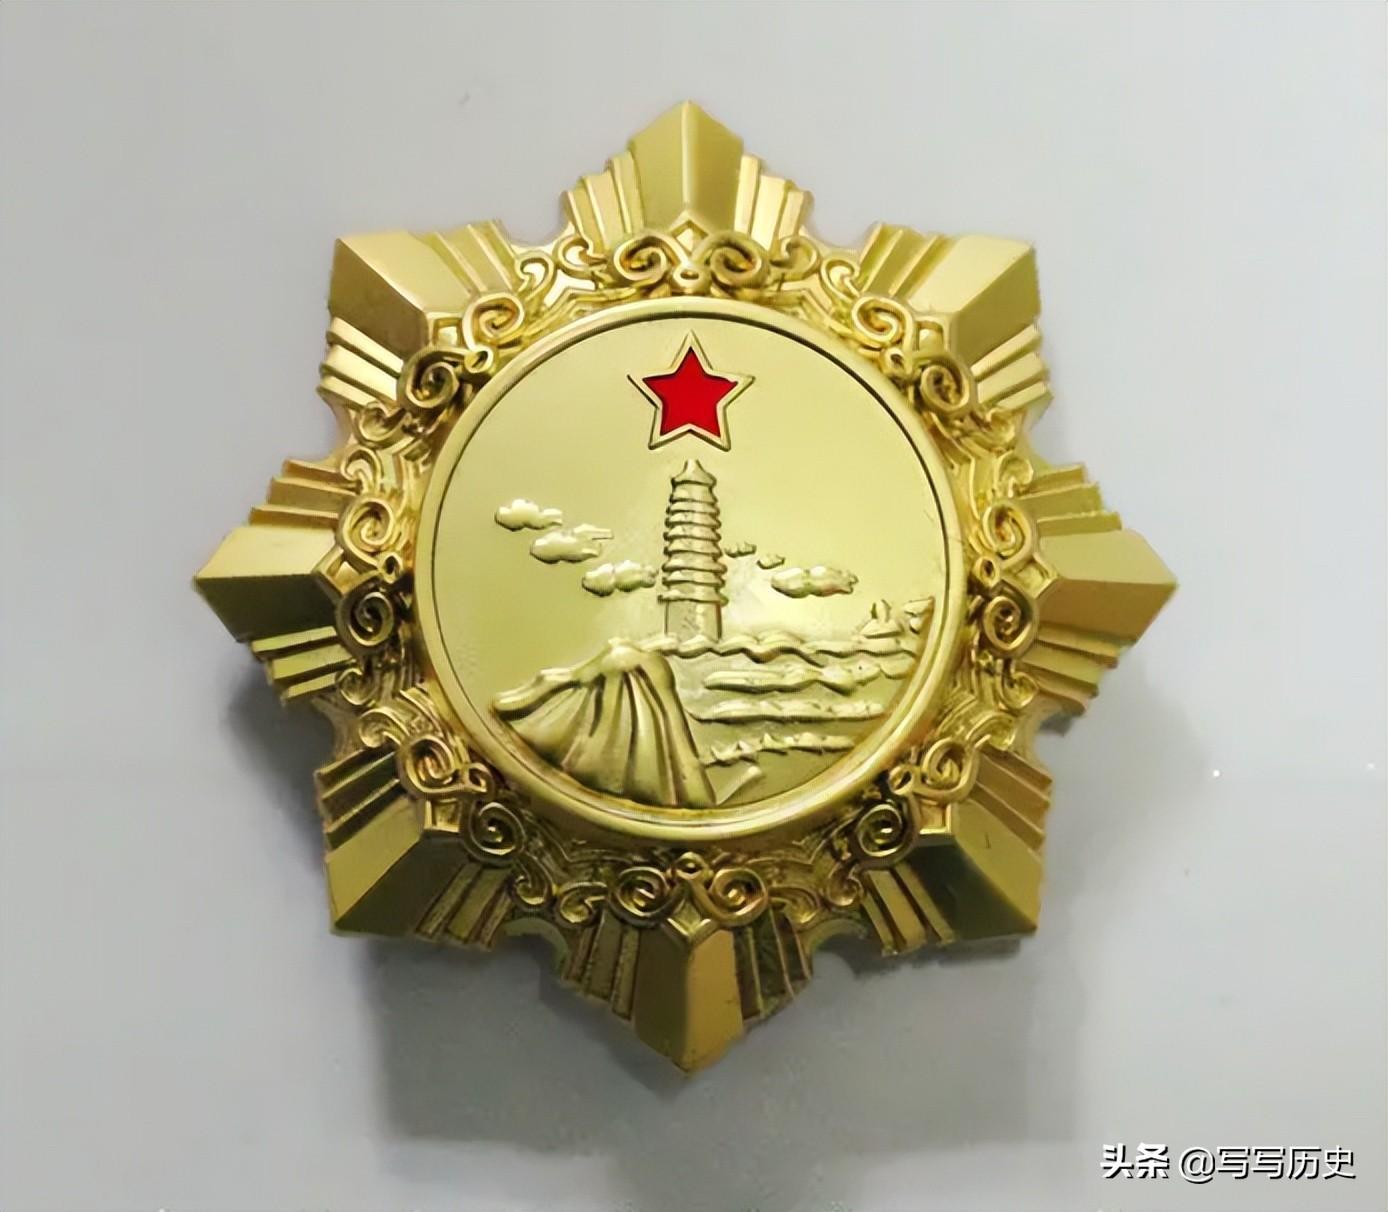 独立自由勋章(盘点一级独立自由勋章获得者和他们抗日战争时期担任过的职务)